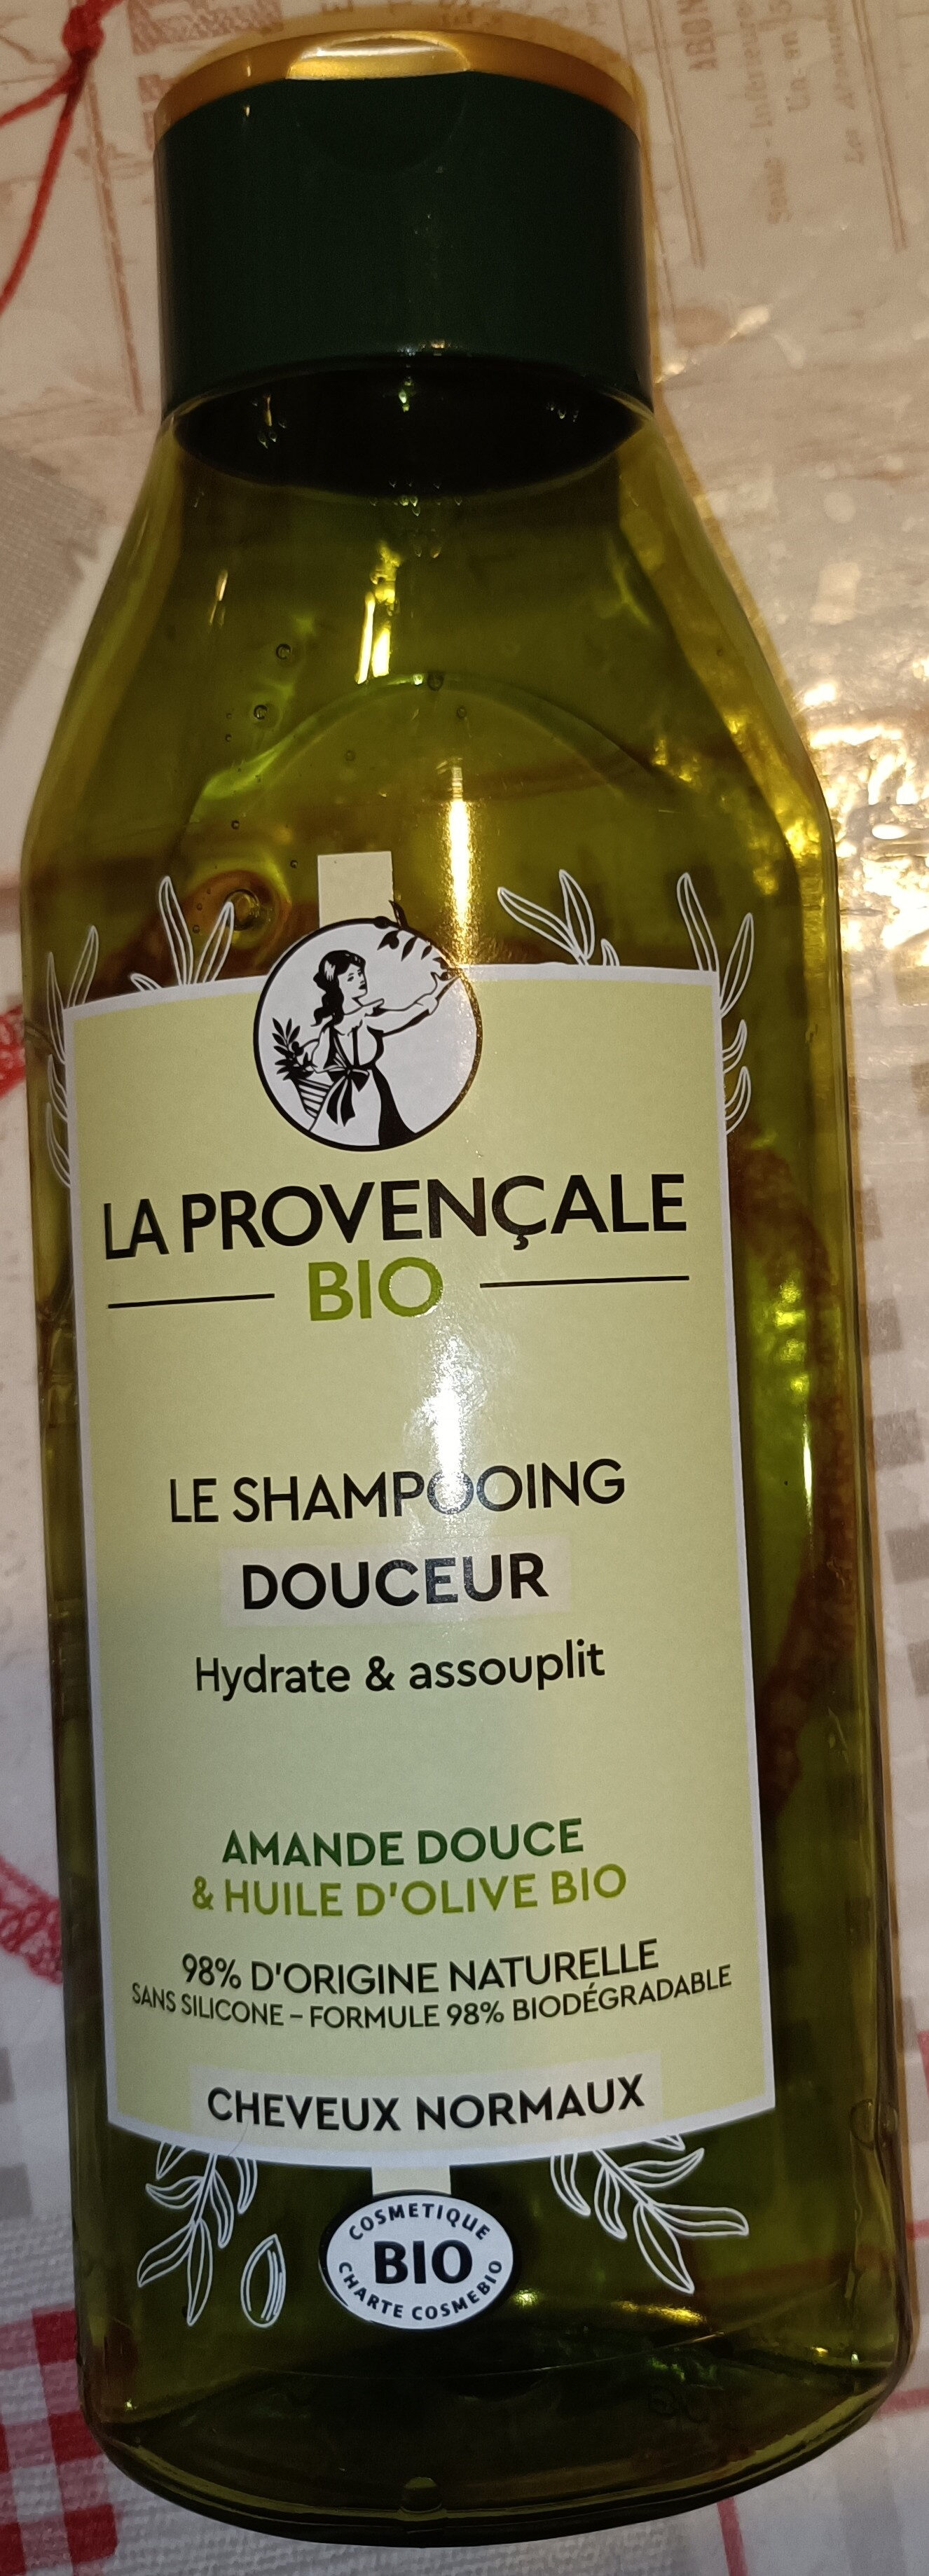 Le shampooing douceur - Produkt - fr